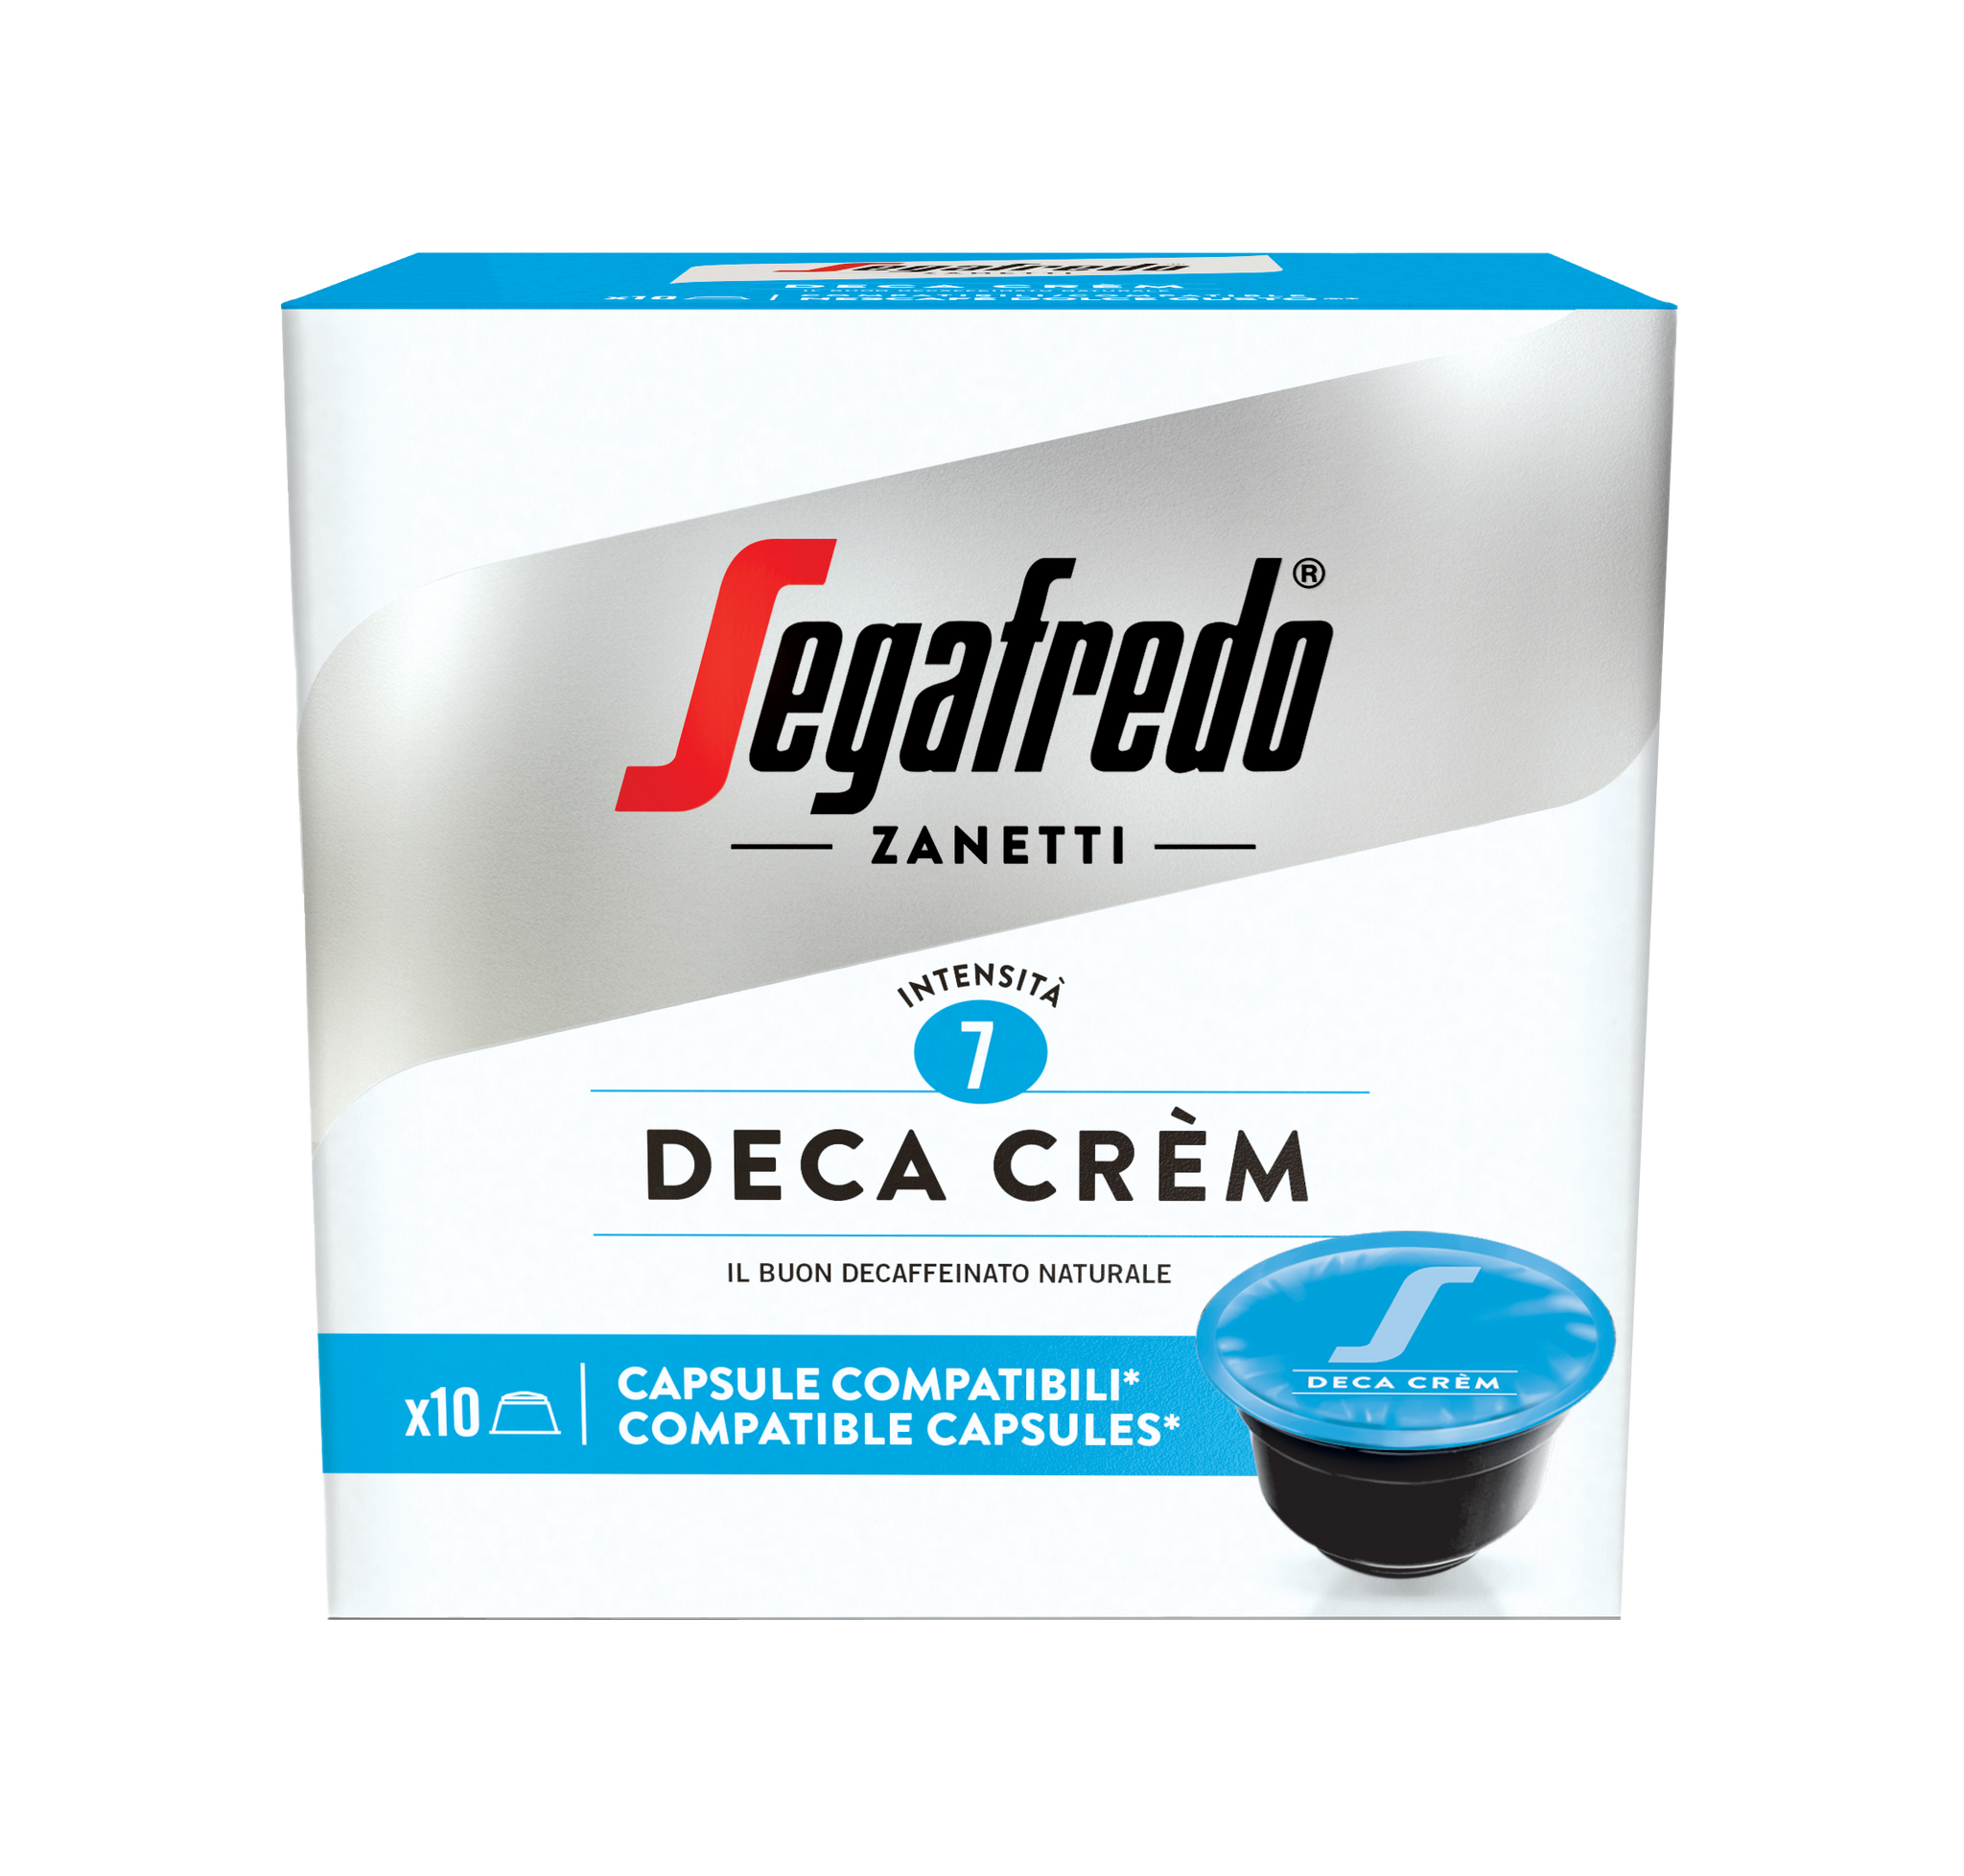 Segafredo Zanetti - Deca Crem Coffee Capsule (Dolce Gusto®Compatible) (10pcs)